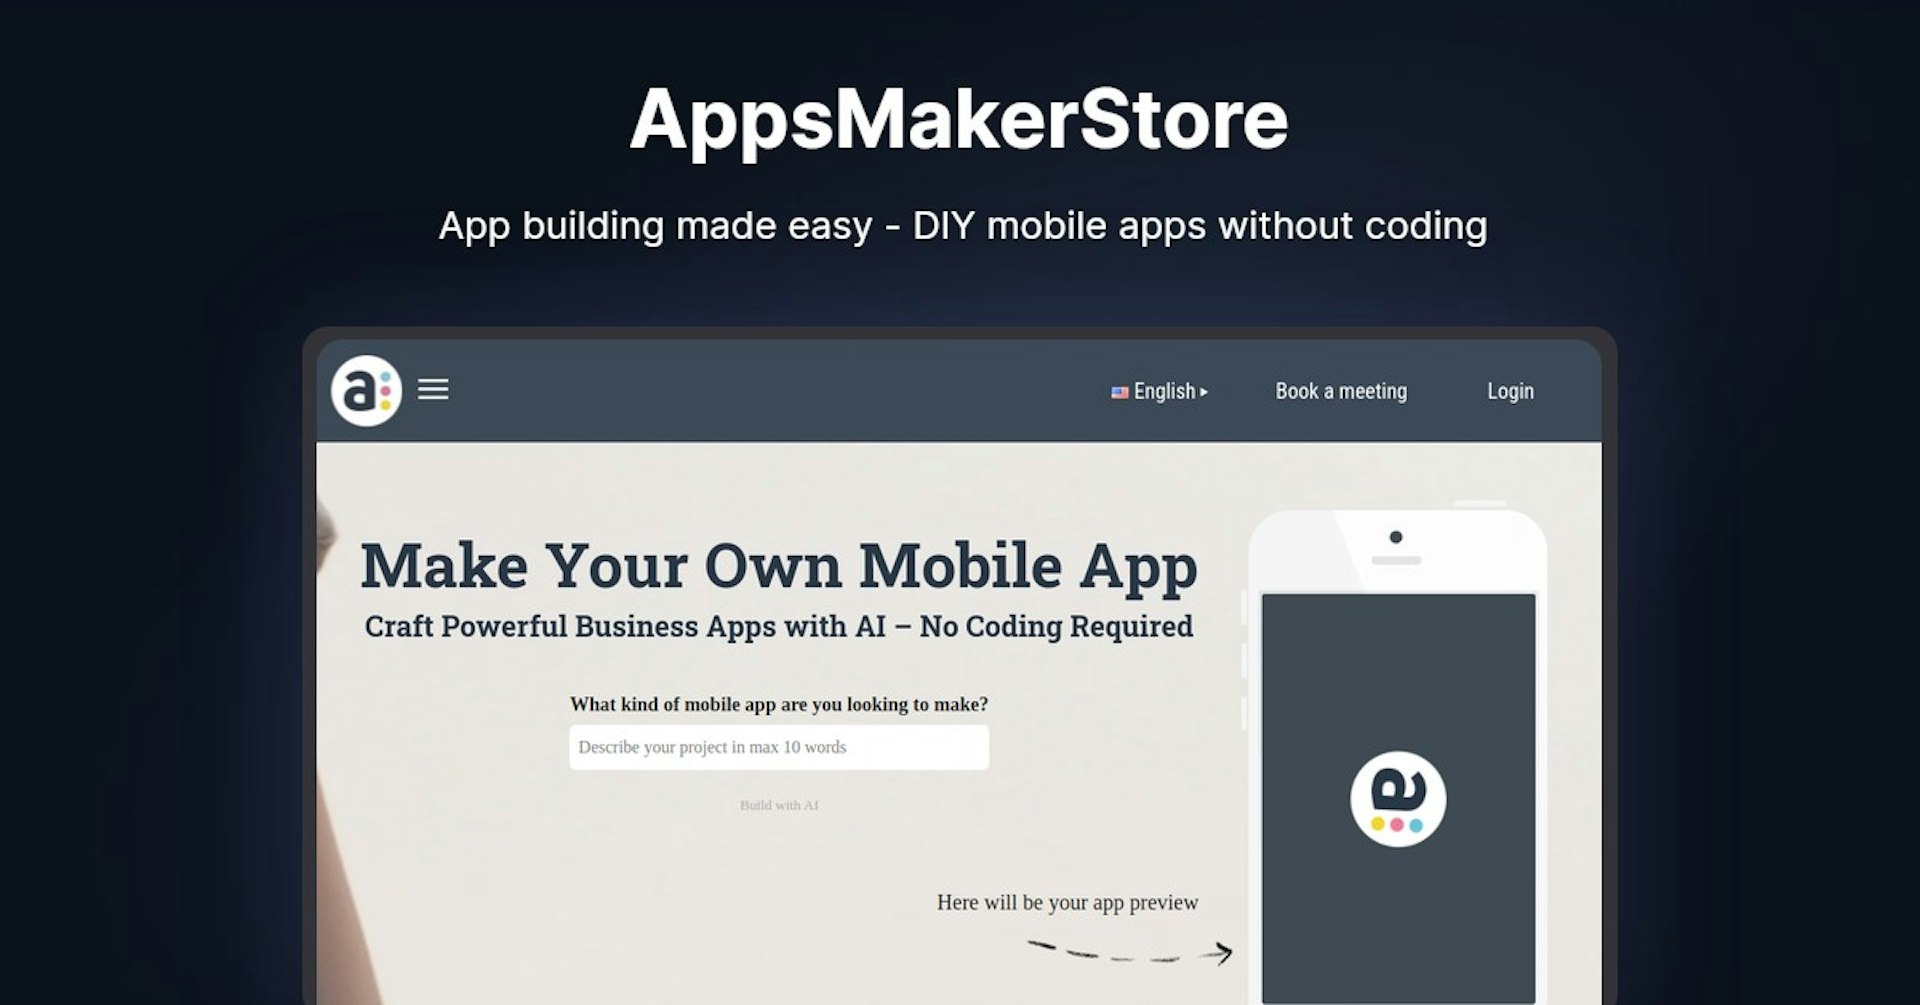 AppsMakerStore